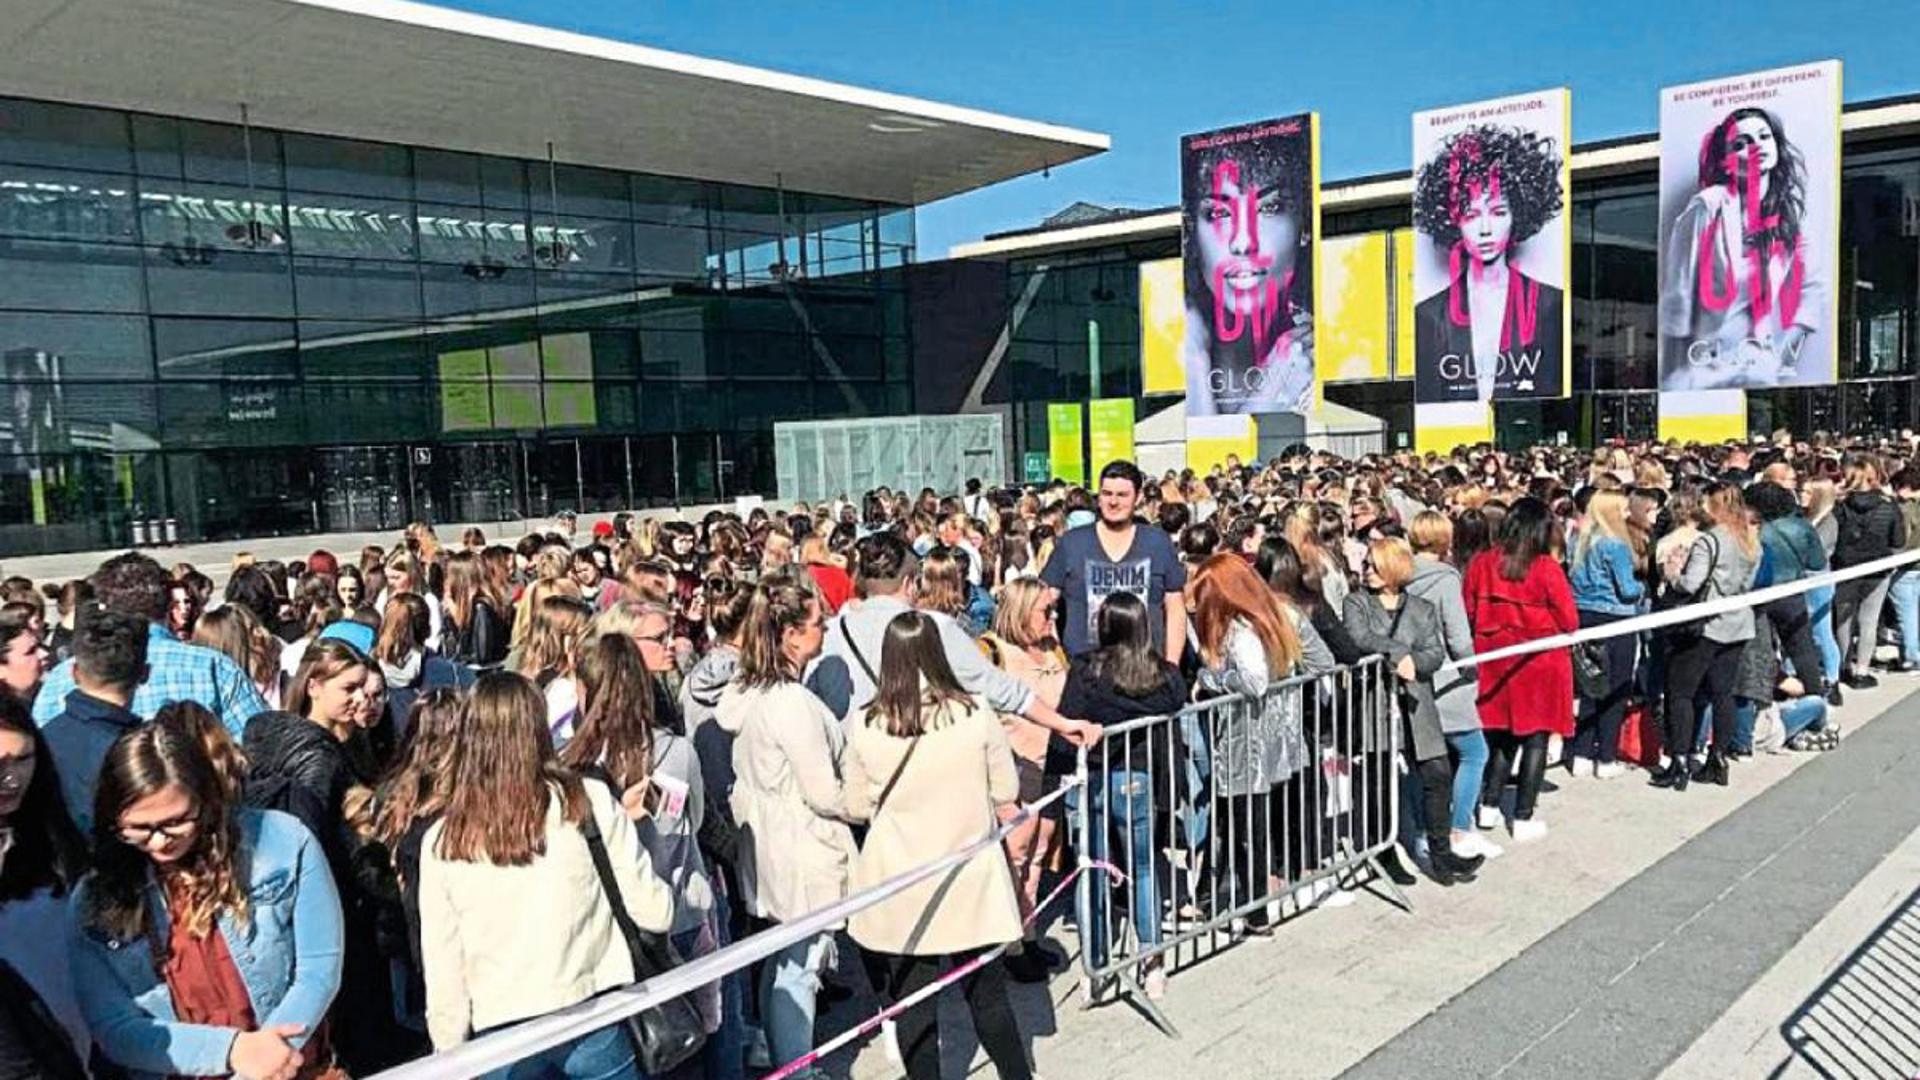 Lange Schlangen vor der „Glow by dm“: 20.000 überwiegend junge Frauen besuchten die Beauty-Convention in Halle 1 der Stuttgarter Messe am Wochenende. Das Karlsruher Unternehmen dm ist seit neuestem Partner.